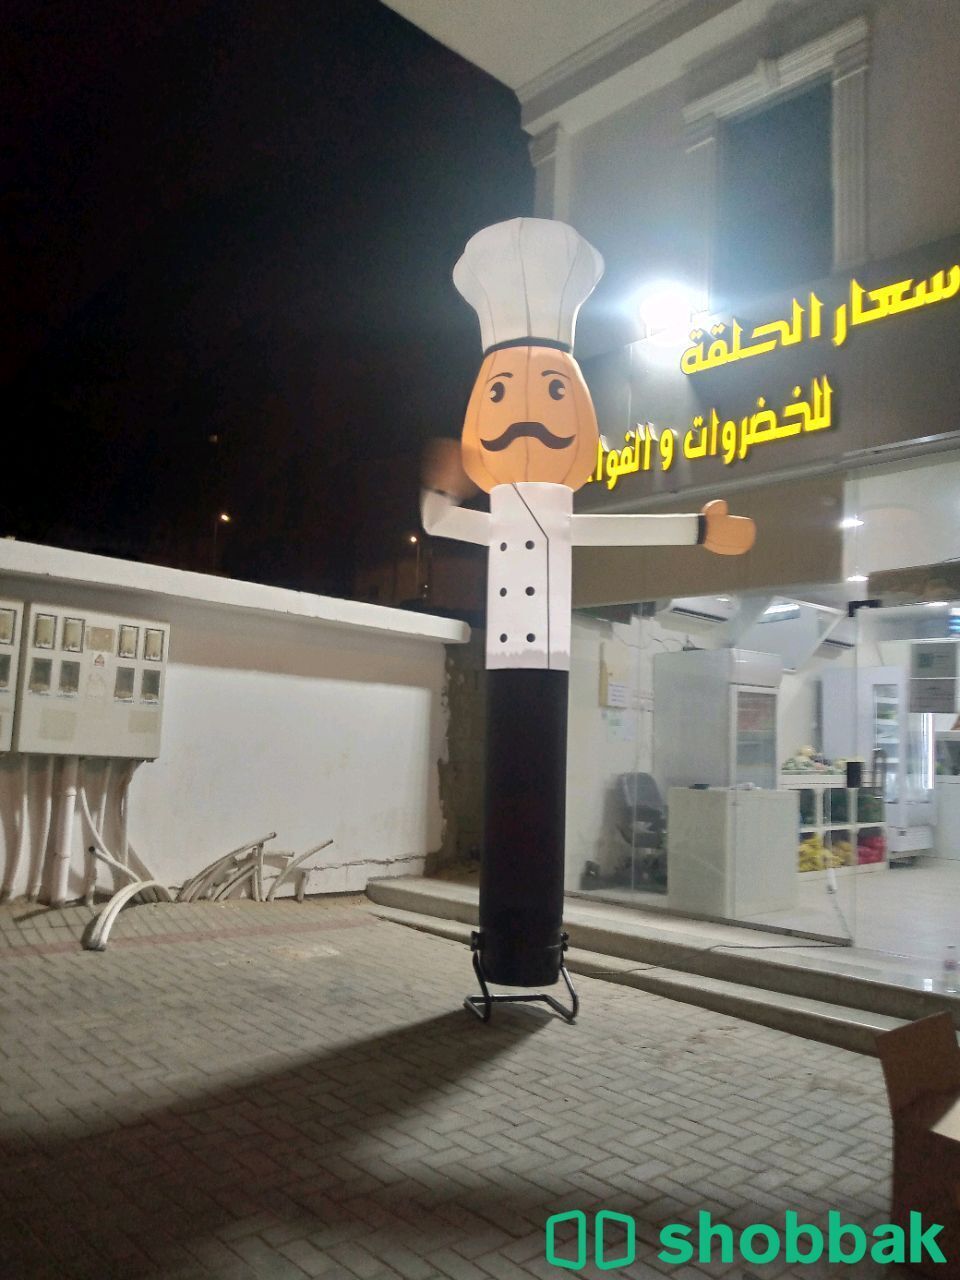 بالونات راقصة هوائية لافتتاح المحلات وتنشيط المبيعات الشيف الطباخ Shobbak Saudi Arabia